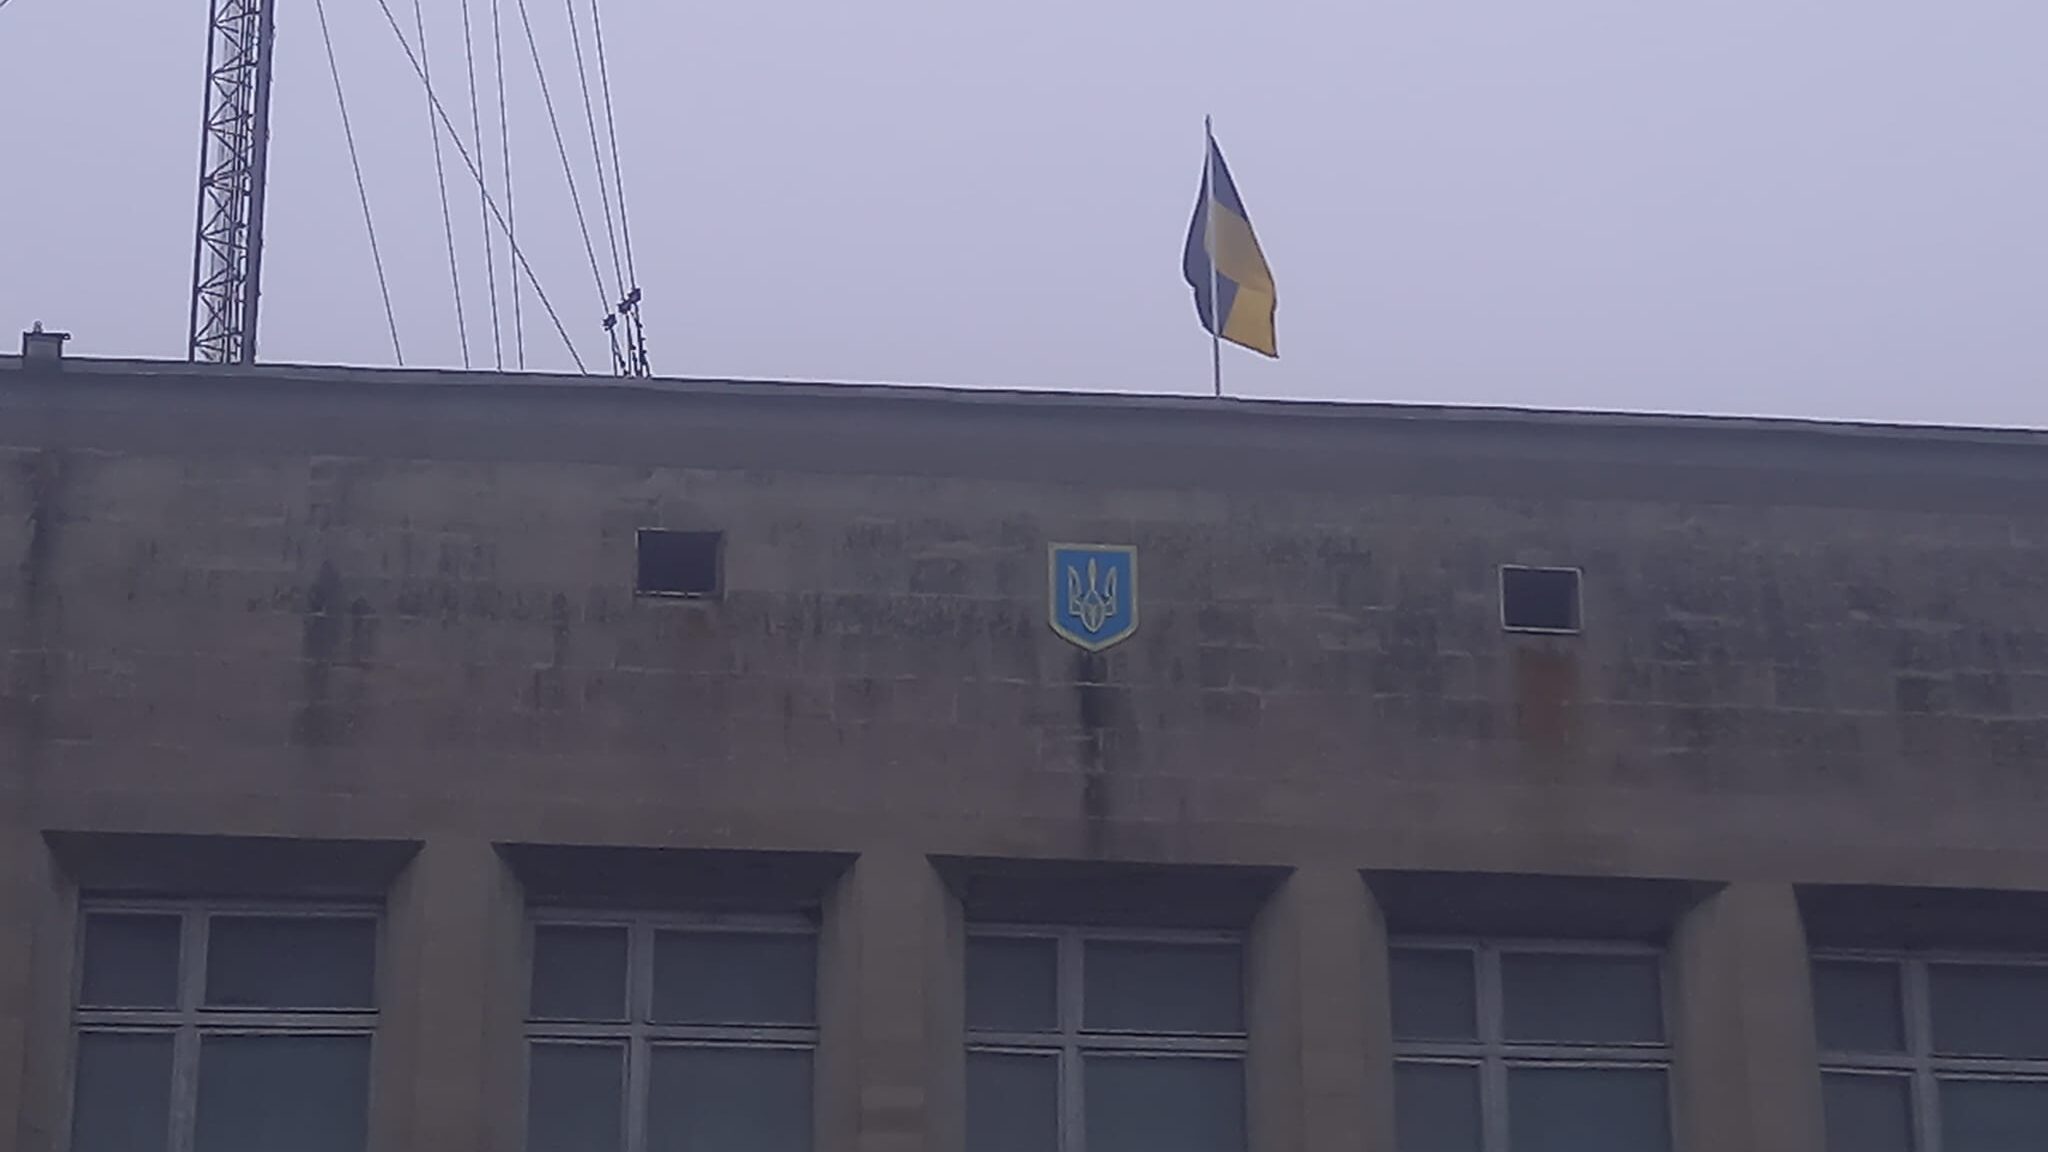 «Громада продовжує роботу під нашим прапором України»: голова Михайлівки спростував звинувачення у співпраці з окупантами